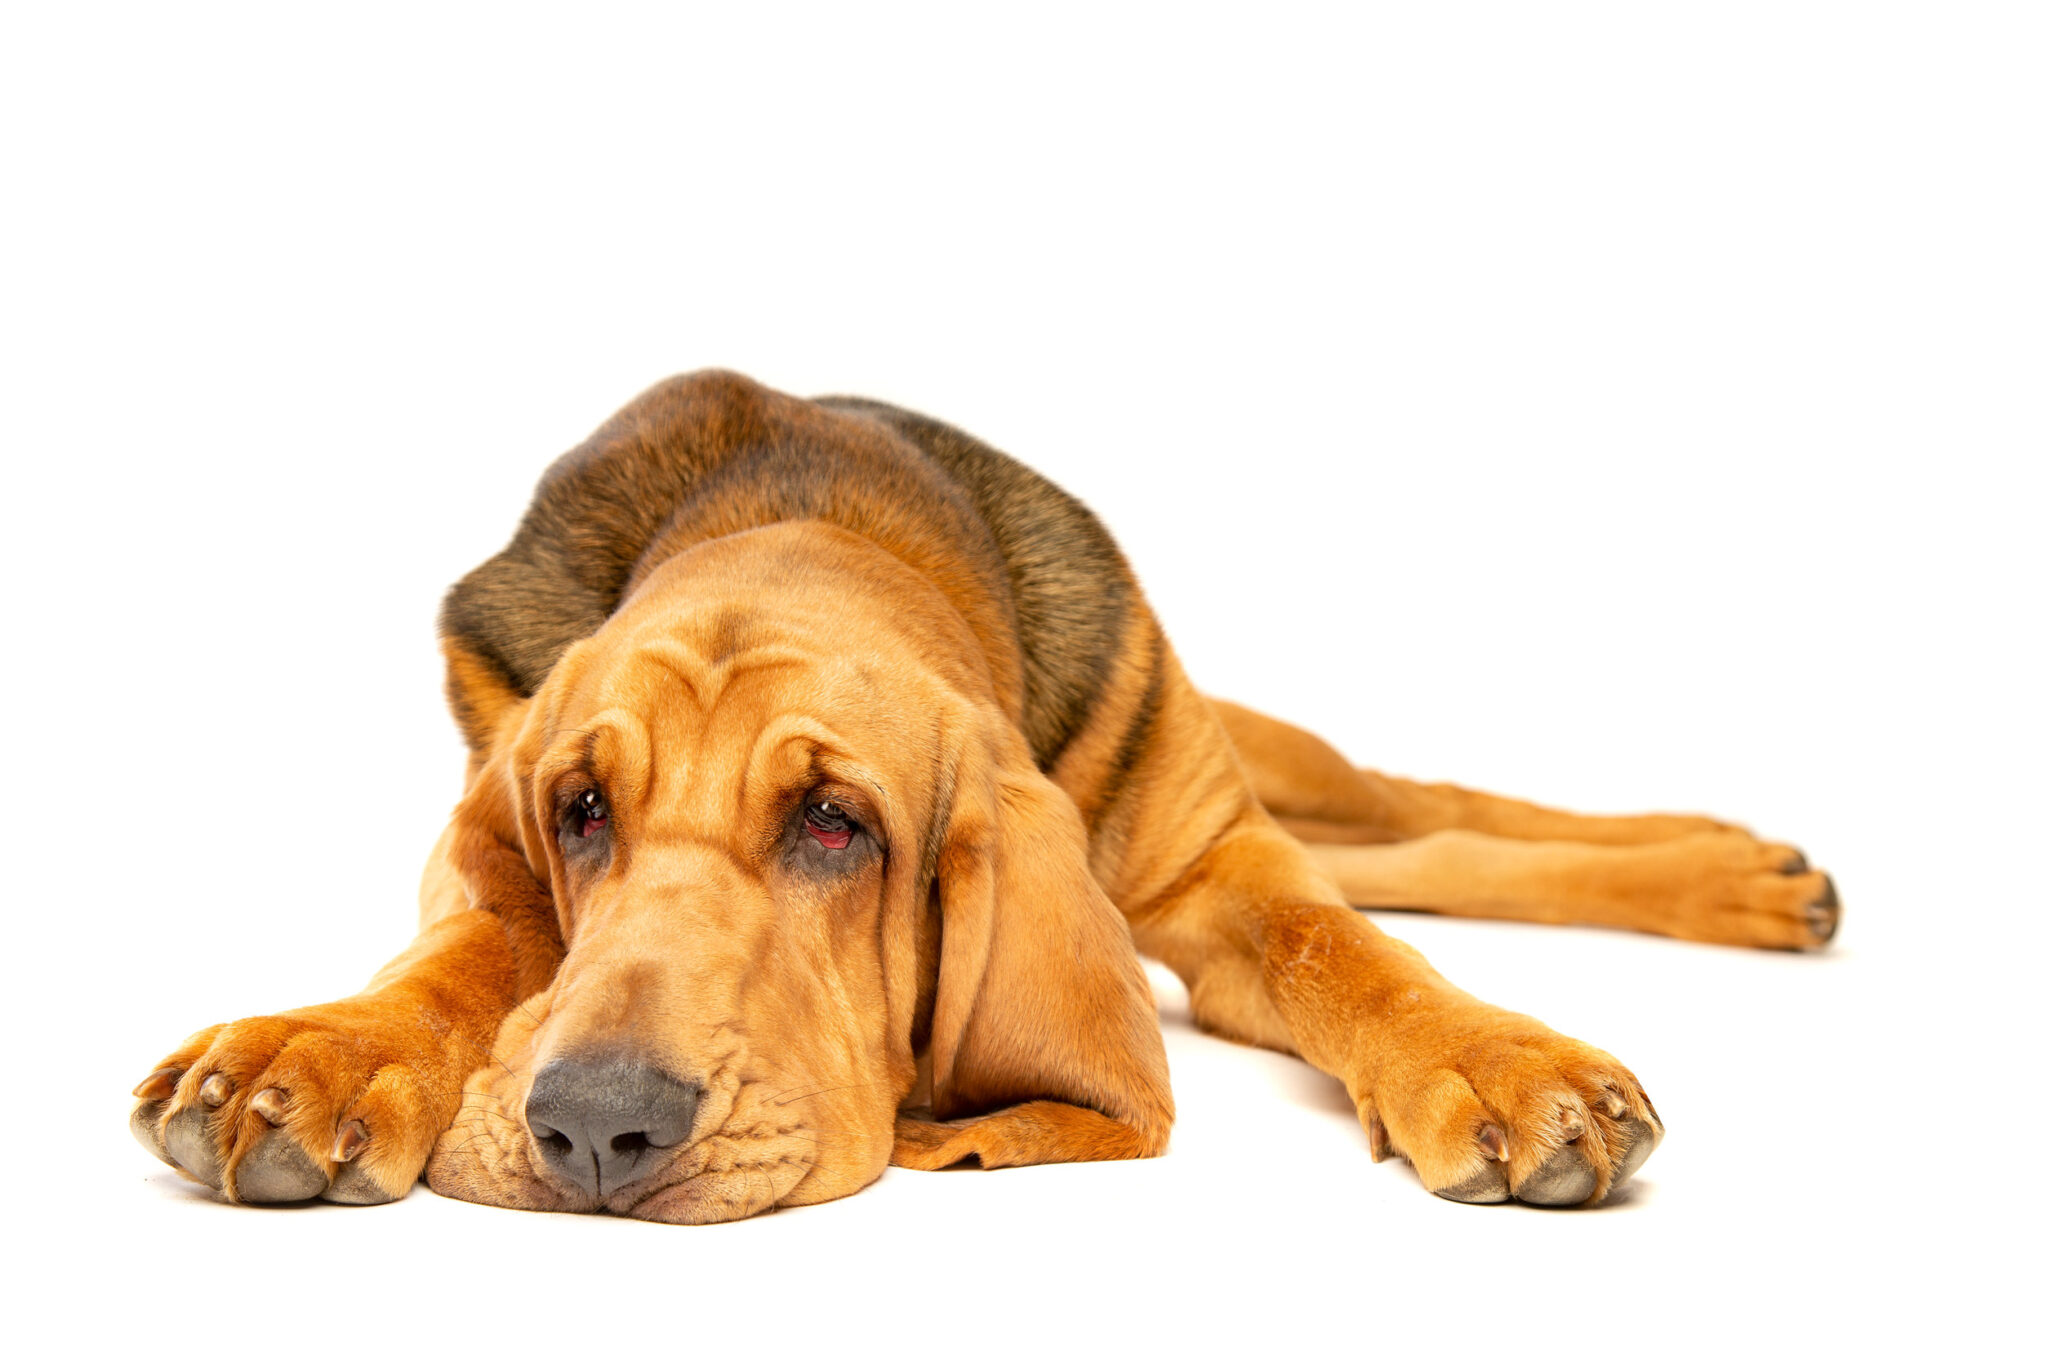 Perfil del Bloodhound o perro de San Huberto: cuidado, actitud y carácter